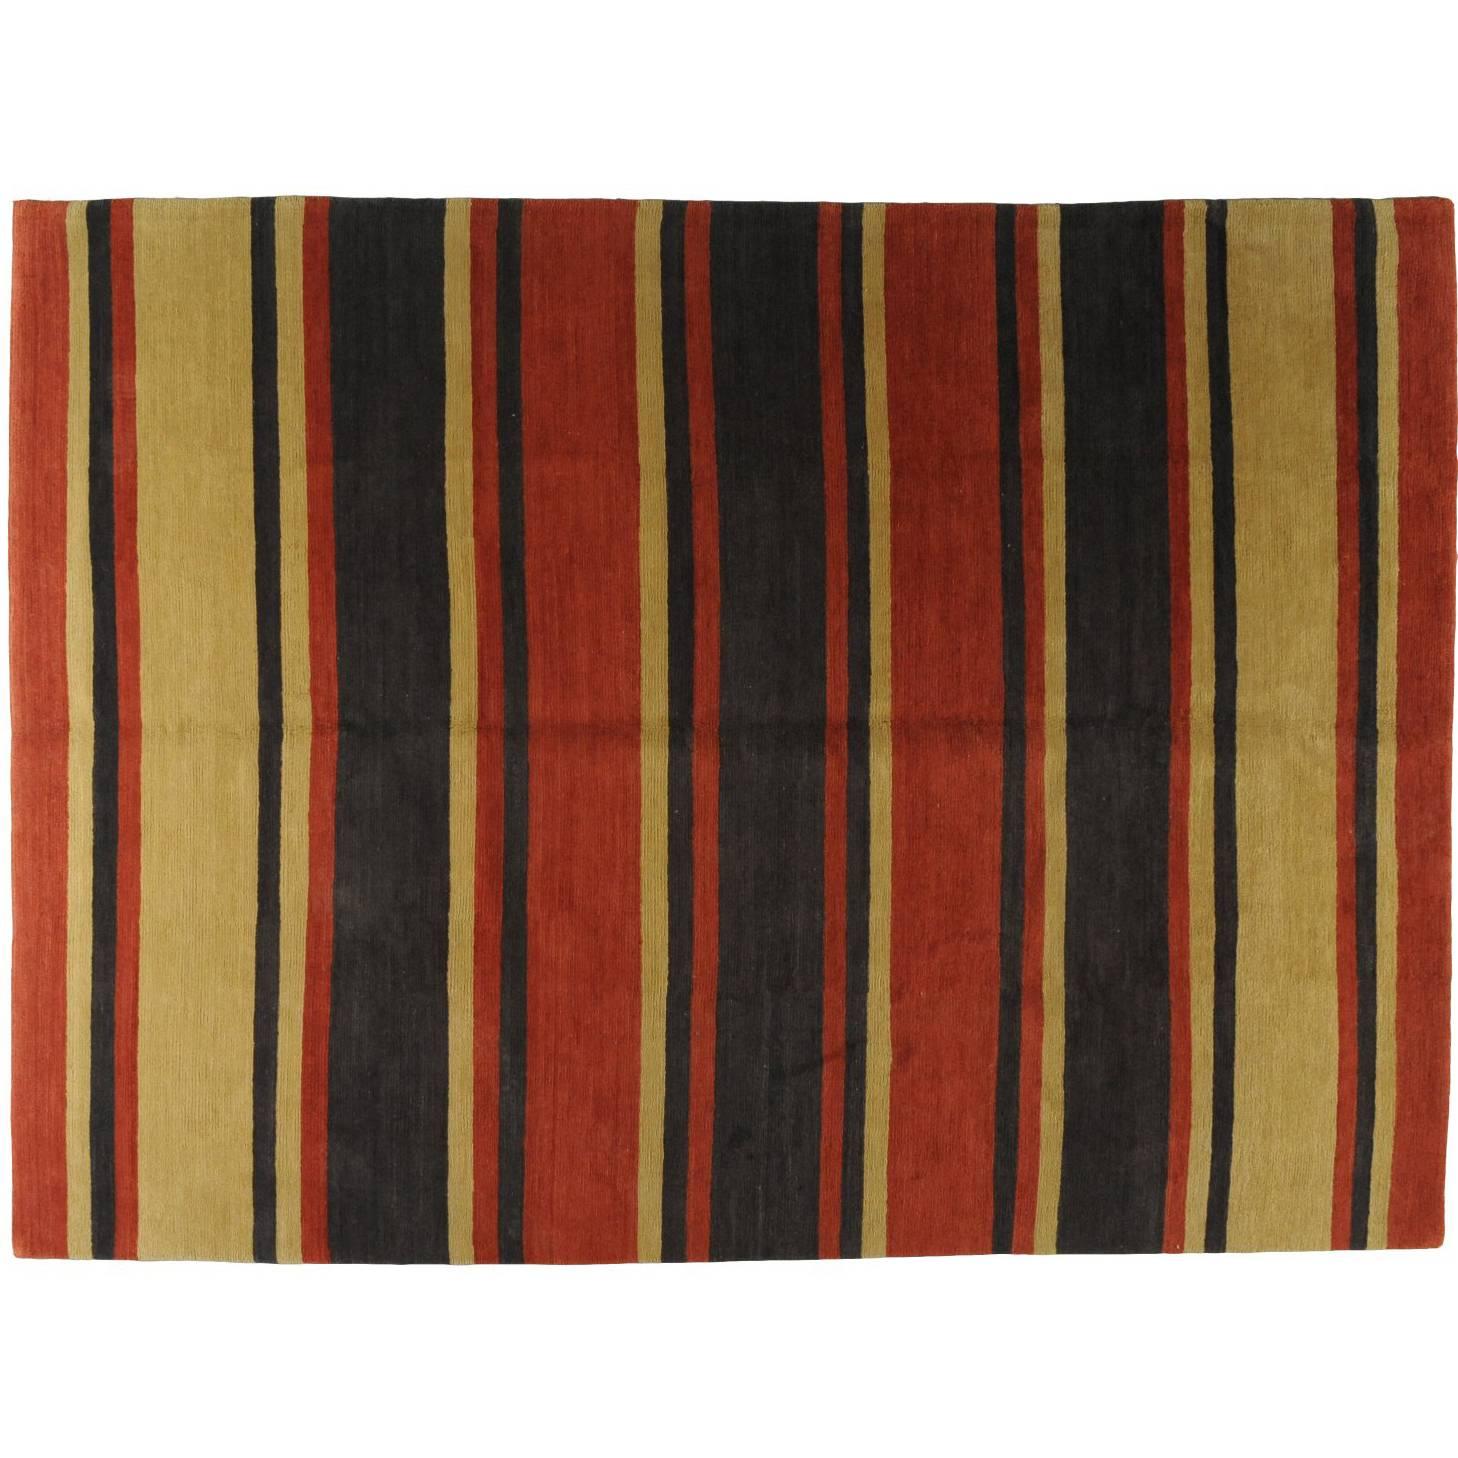 Tibetan Rug For Sale